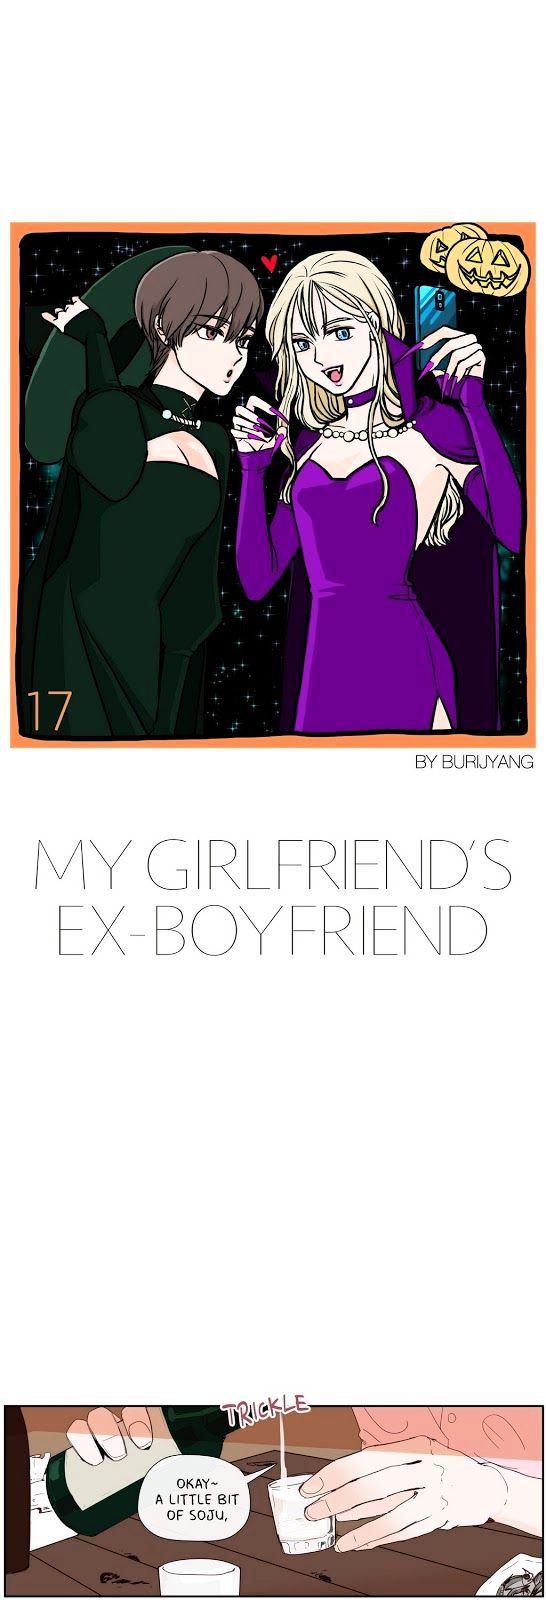 My Girlfriend's Ex-Boyfriend - Page 1